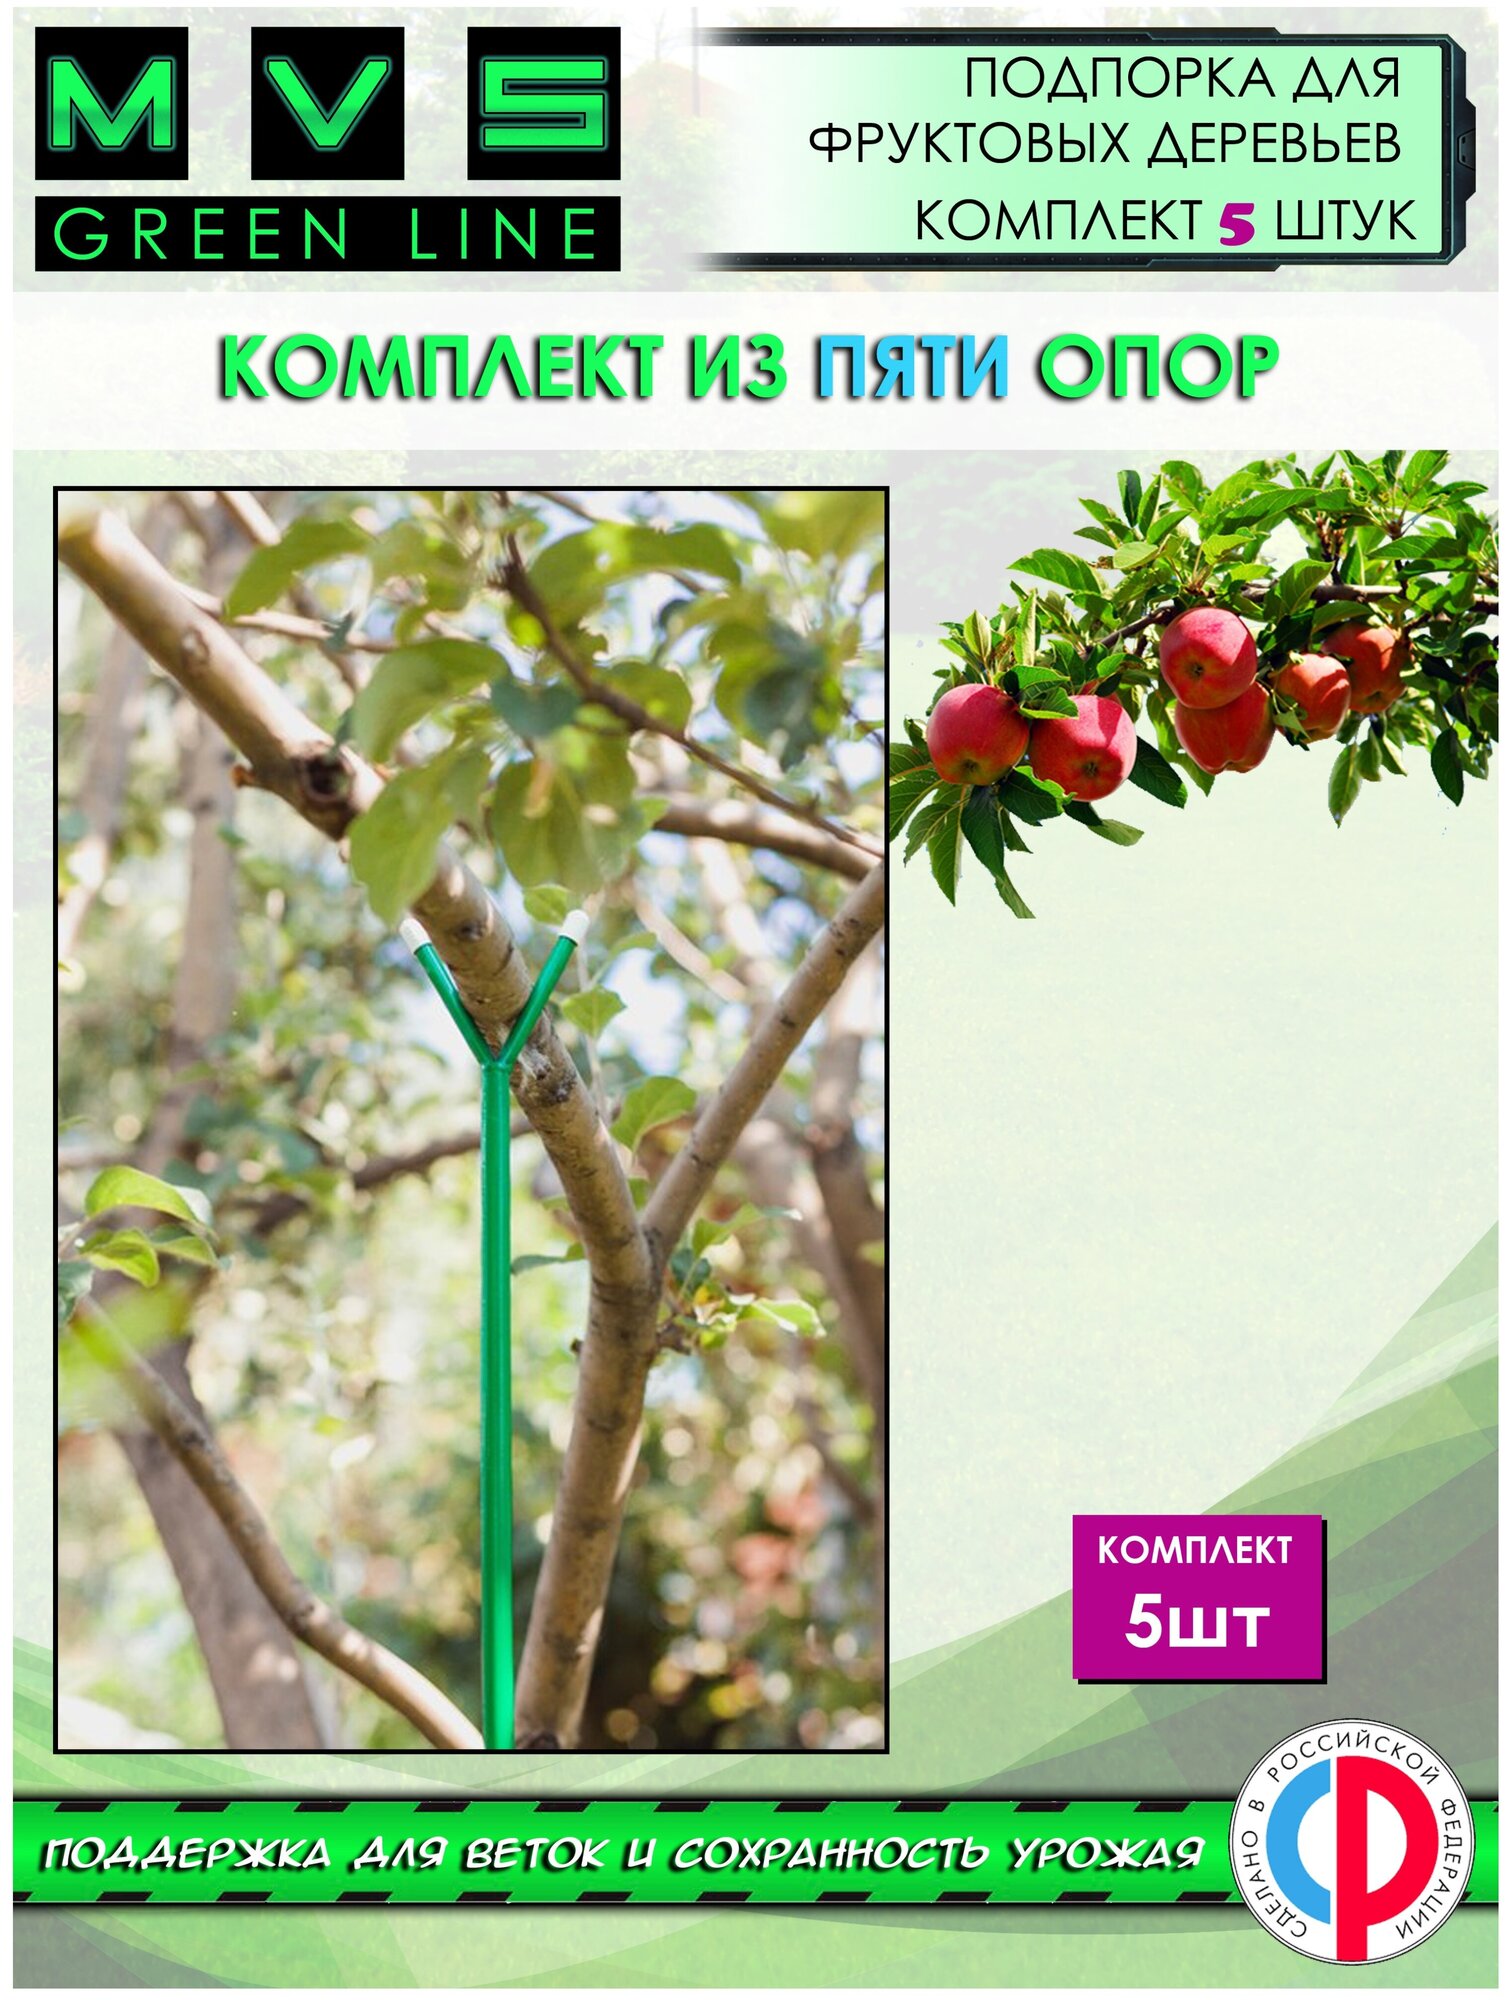 Подпорка для фруктовых деревьев Опора для веток и кустарников H-16 м 5 штук